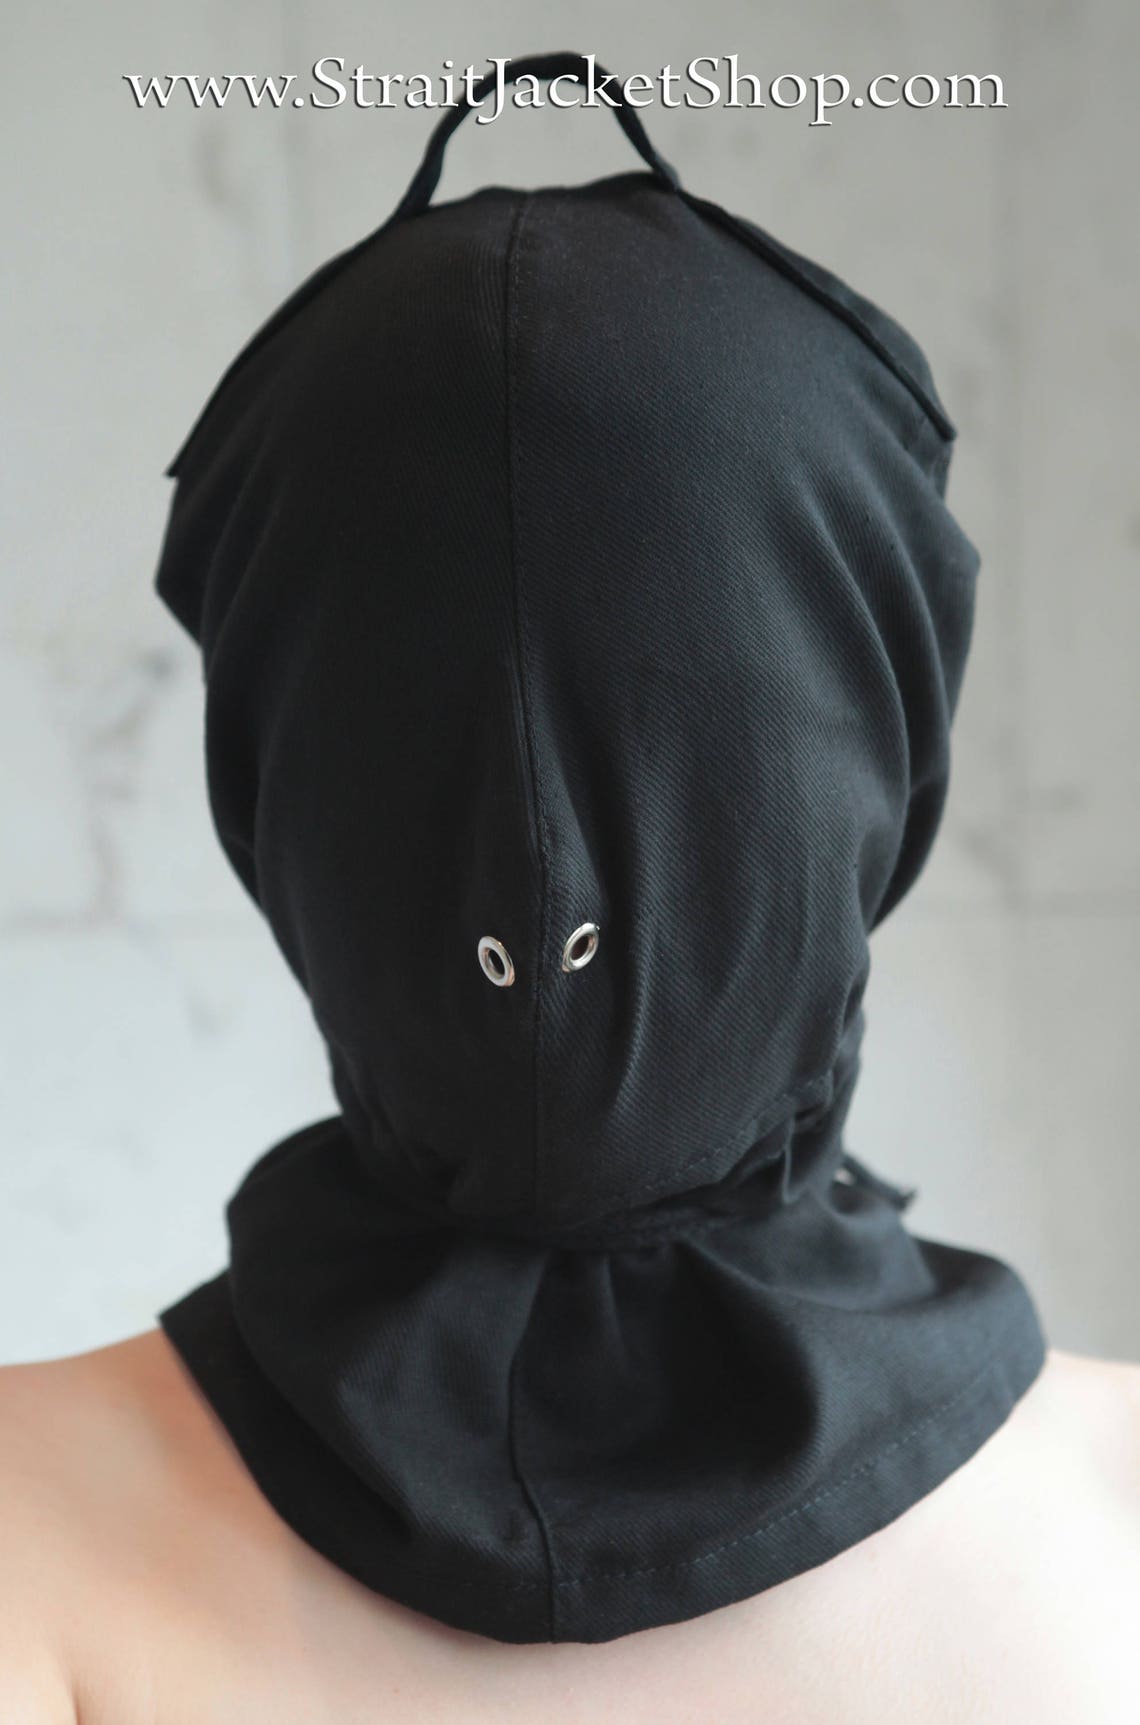 Black Bondage Hood Straitjacket Heavy Duty BDSM Mask - Etsy